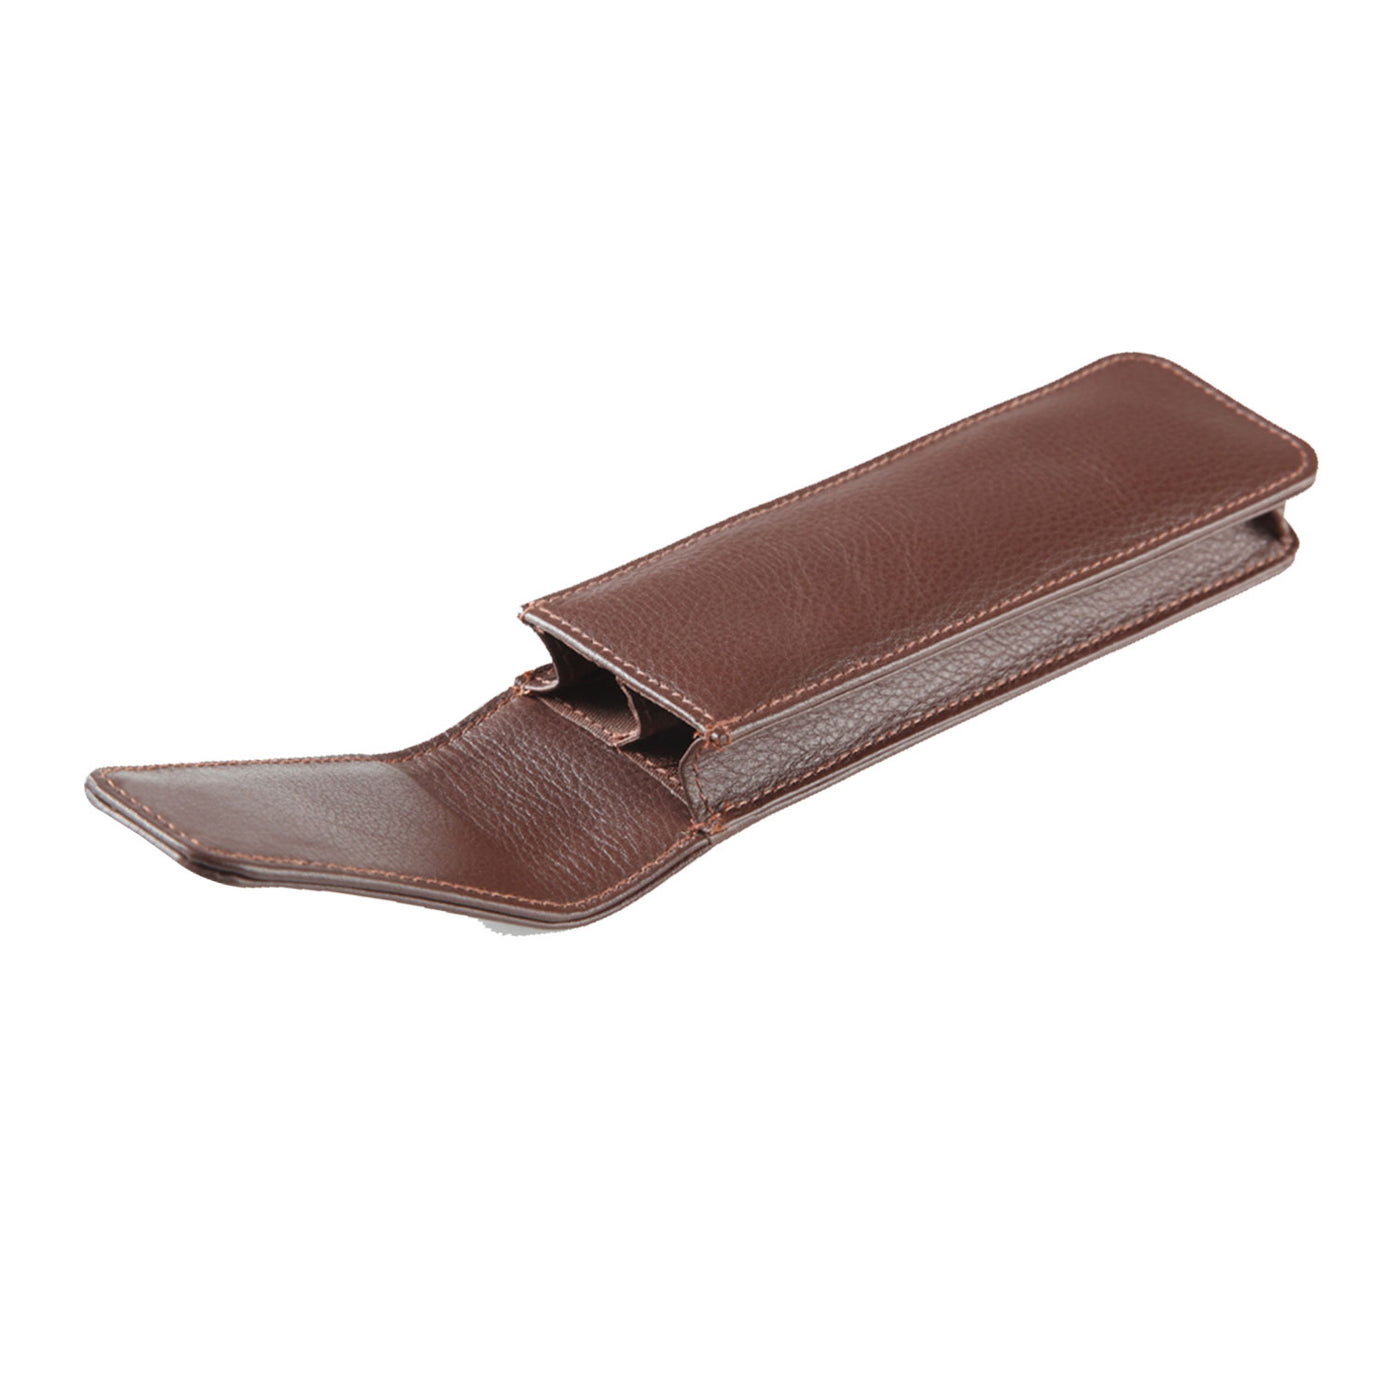 Elan Leather 2 Pen Holder - Brown 2